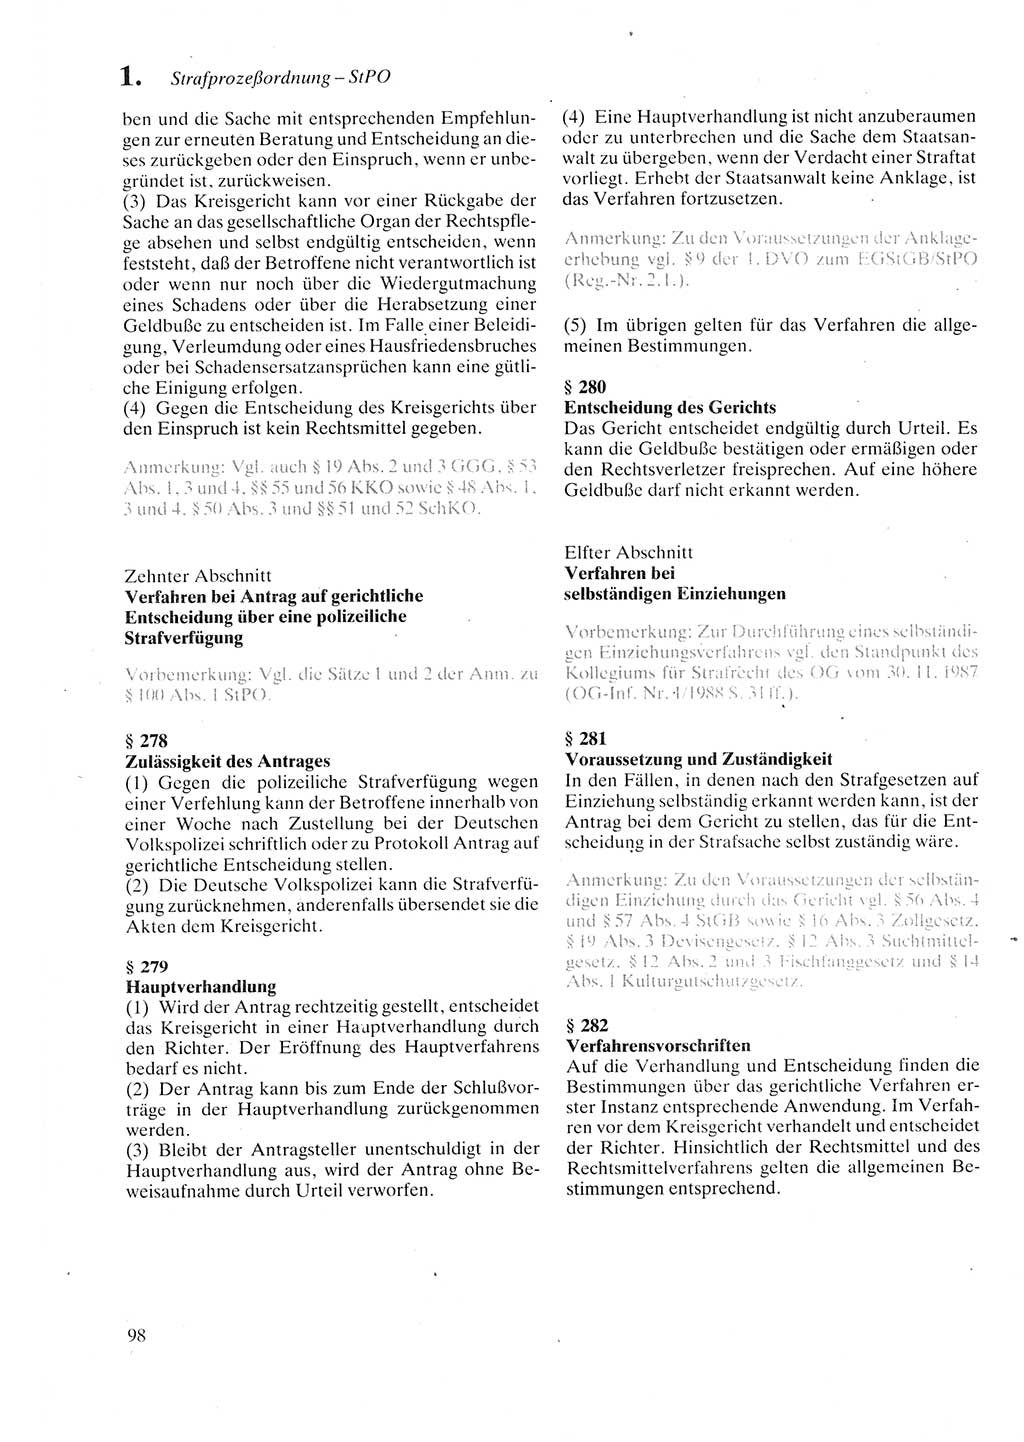 Strafprozeßordnung (StPO) der Deutschen Demokratischen Republik (DDR) sowie angrenzende Gesetze und Bestimmungen 1987, Seite 98 (StPO DDR Ges. Best. 1987, S. 98)